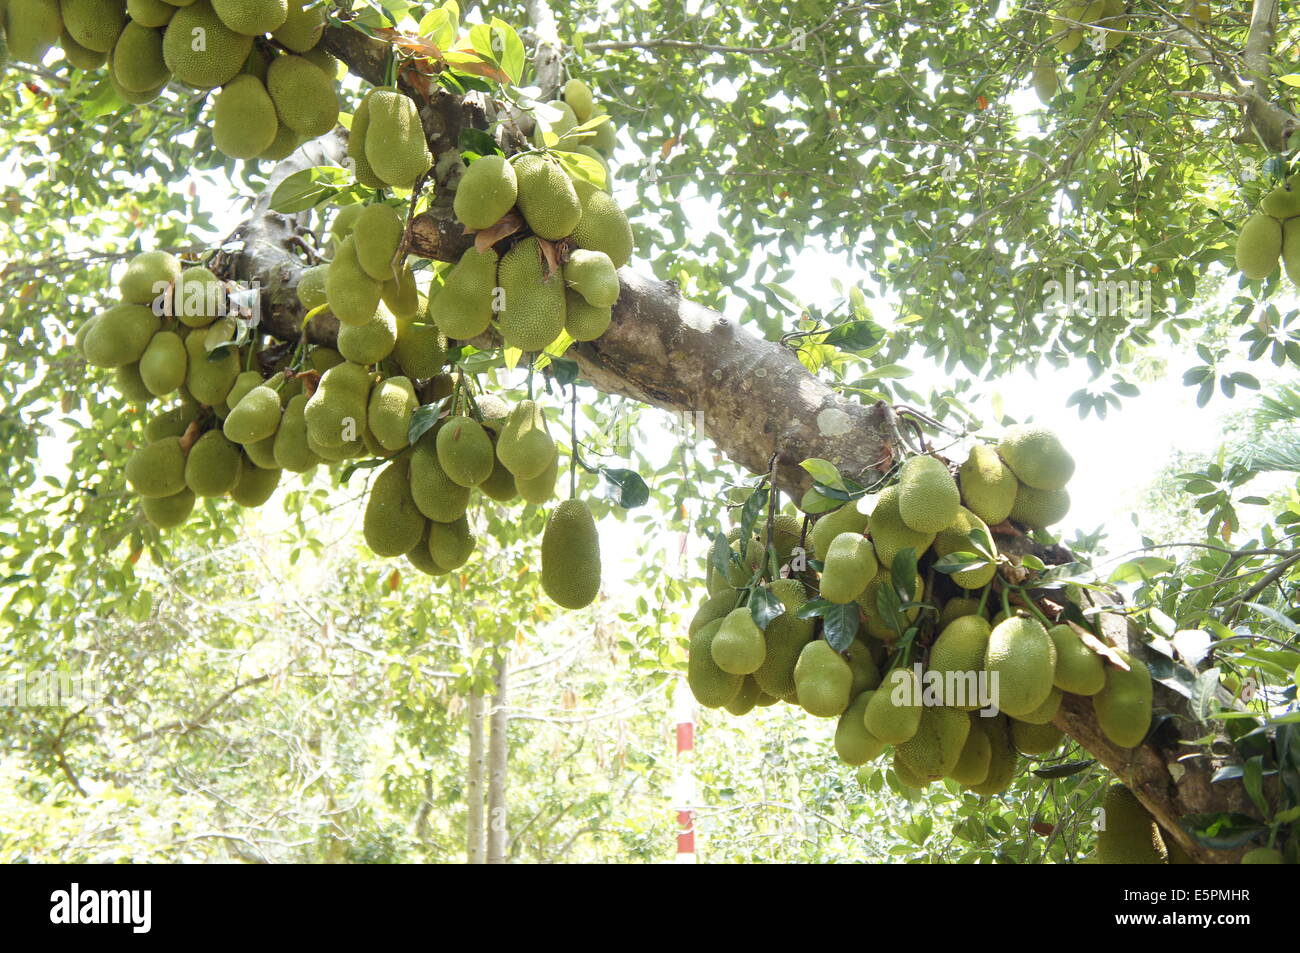 jackfruit tree with many fruits Stock Photo